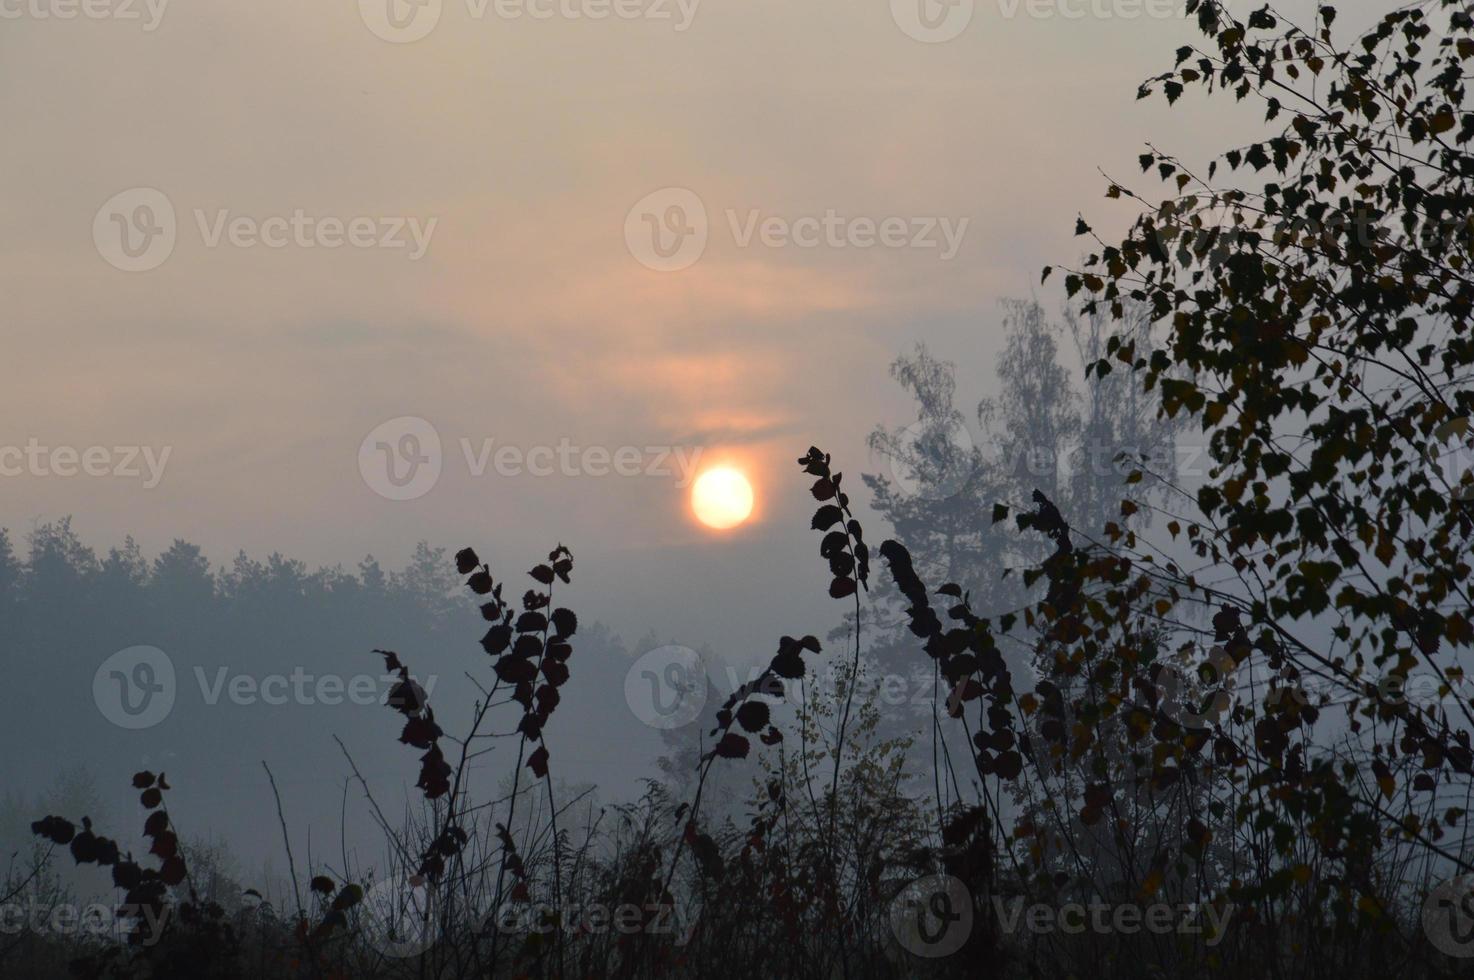 morgonsolen går upp i horisonten i skogen och byn foto